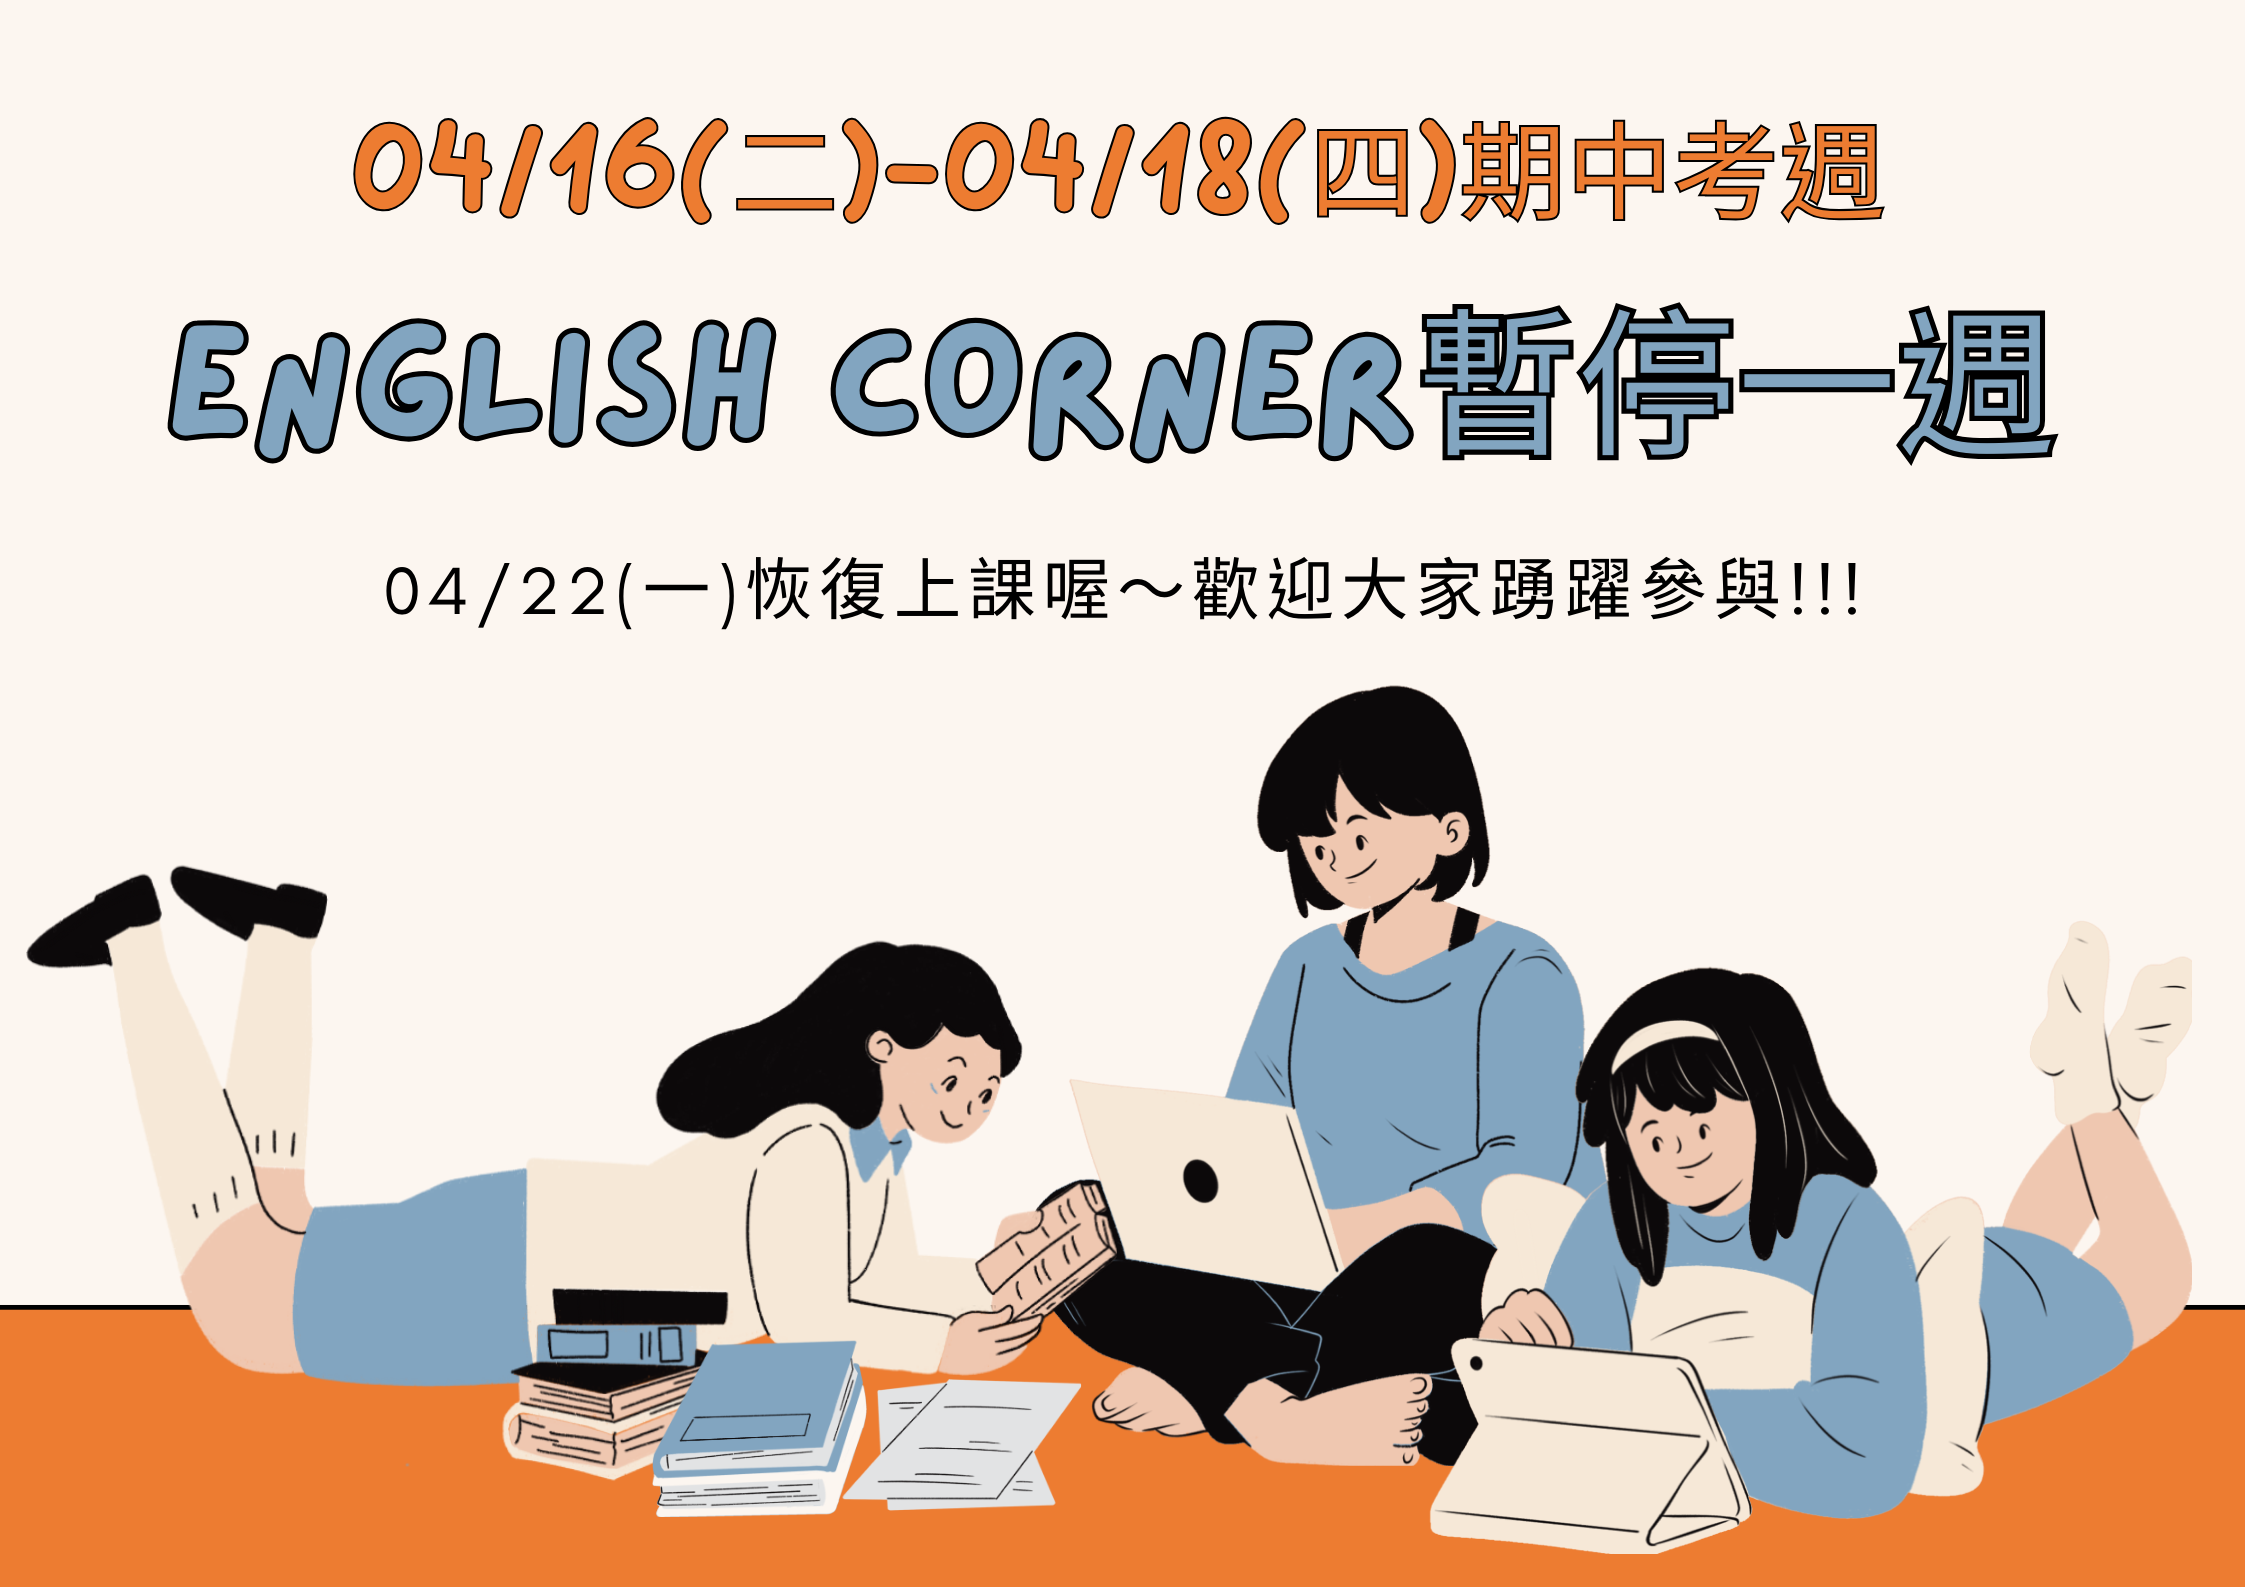 【語教中心】English Corner期中考週，暫停一週!!!-- 附圖1